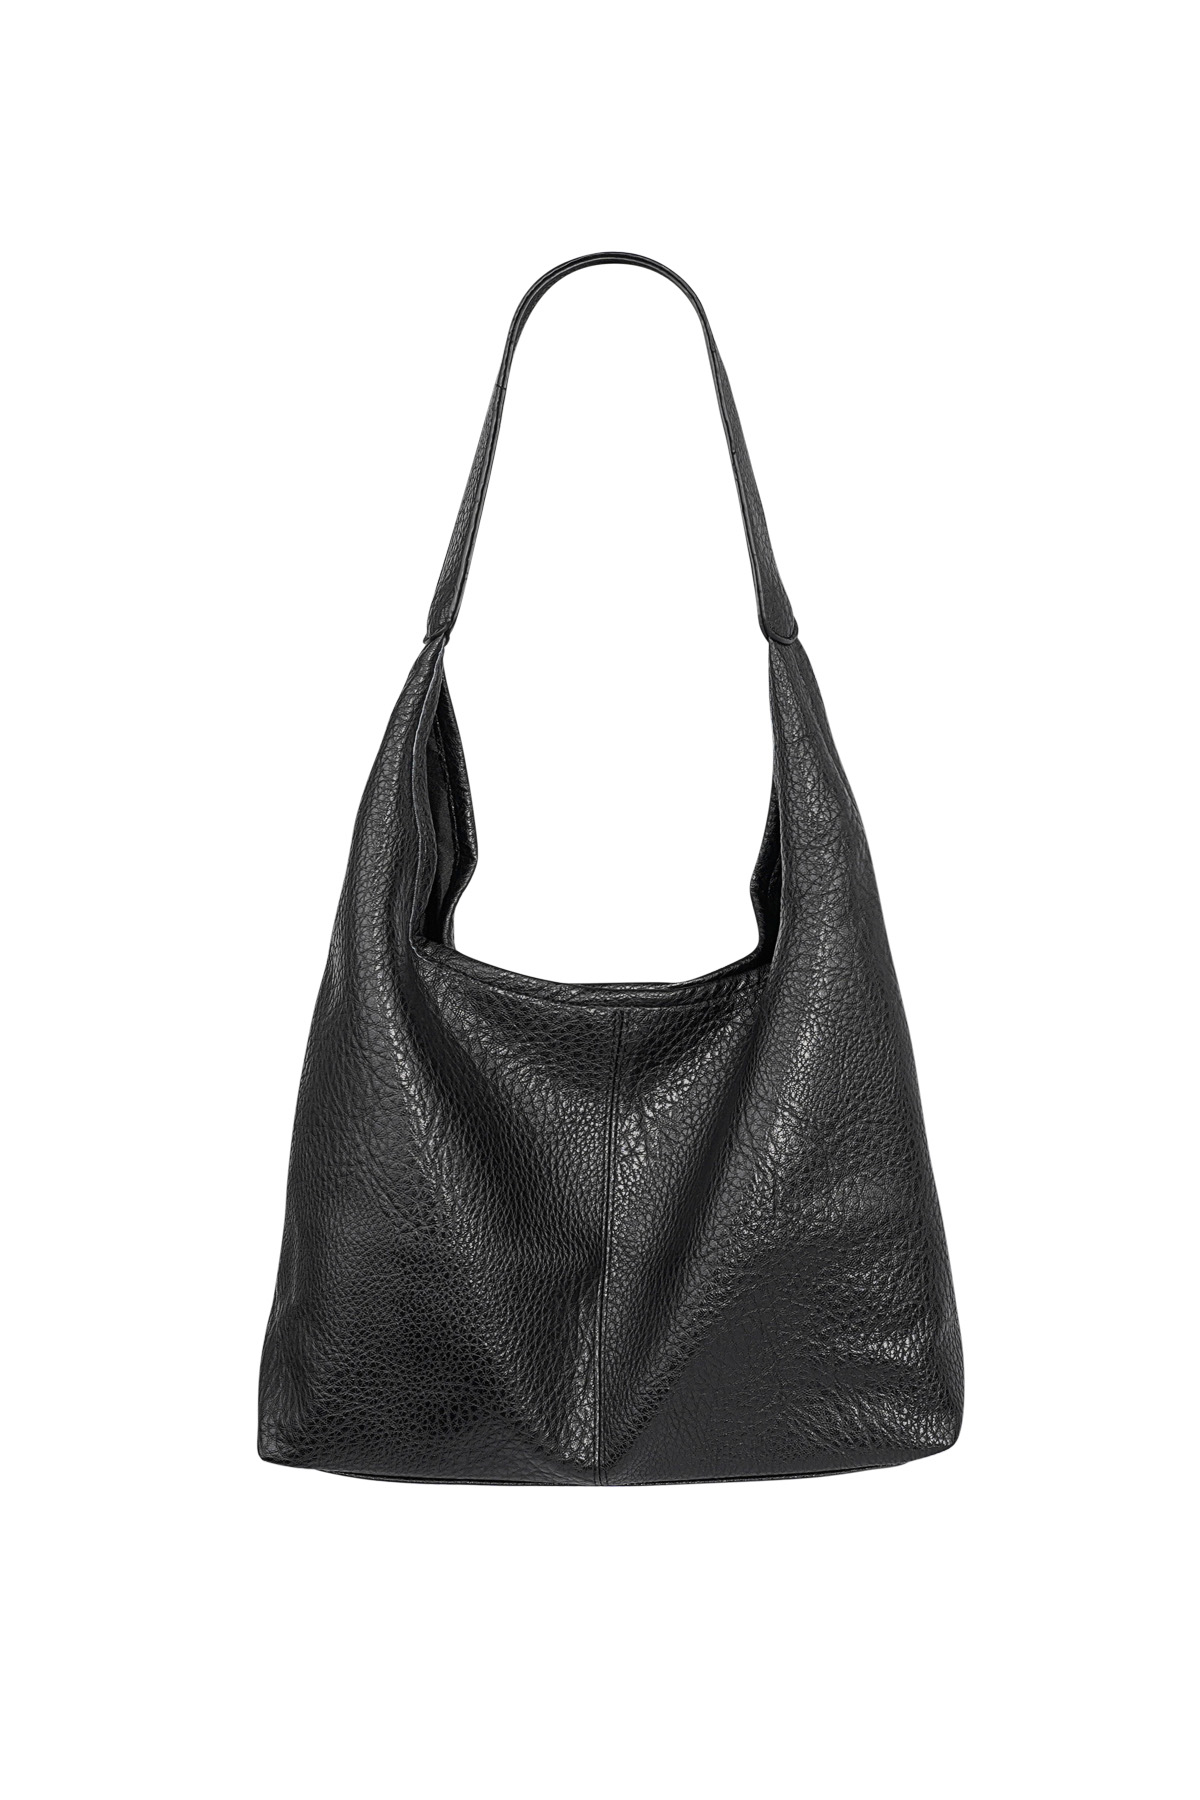 Alışveriş çantası - siyah renkli